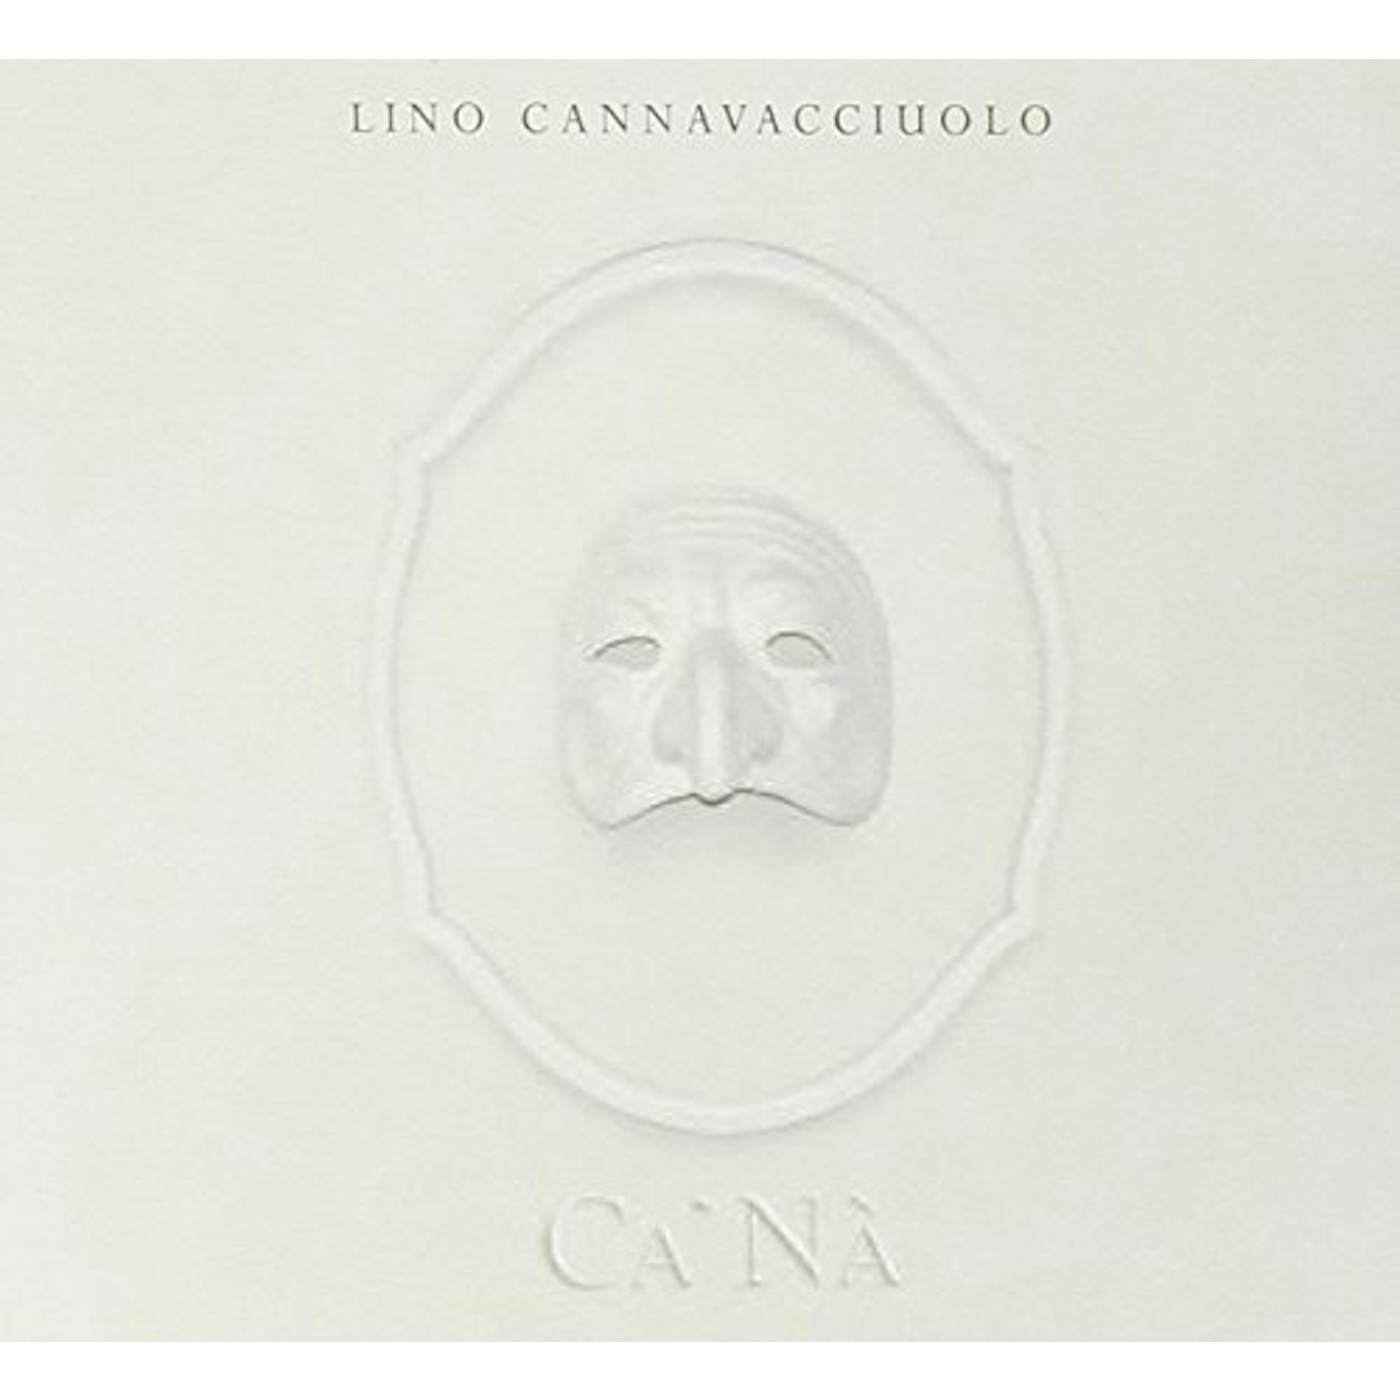 Lino Cannavacciuolo CA NA CD